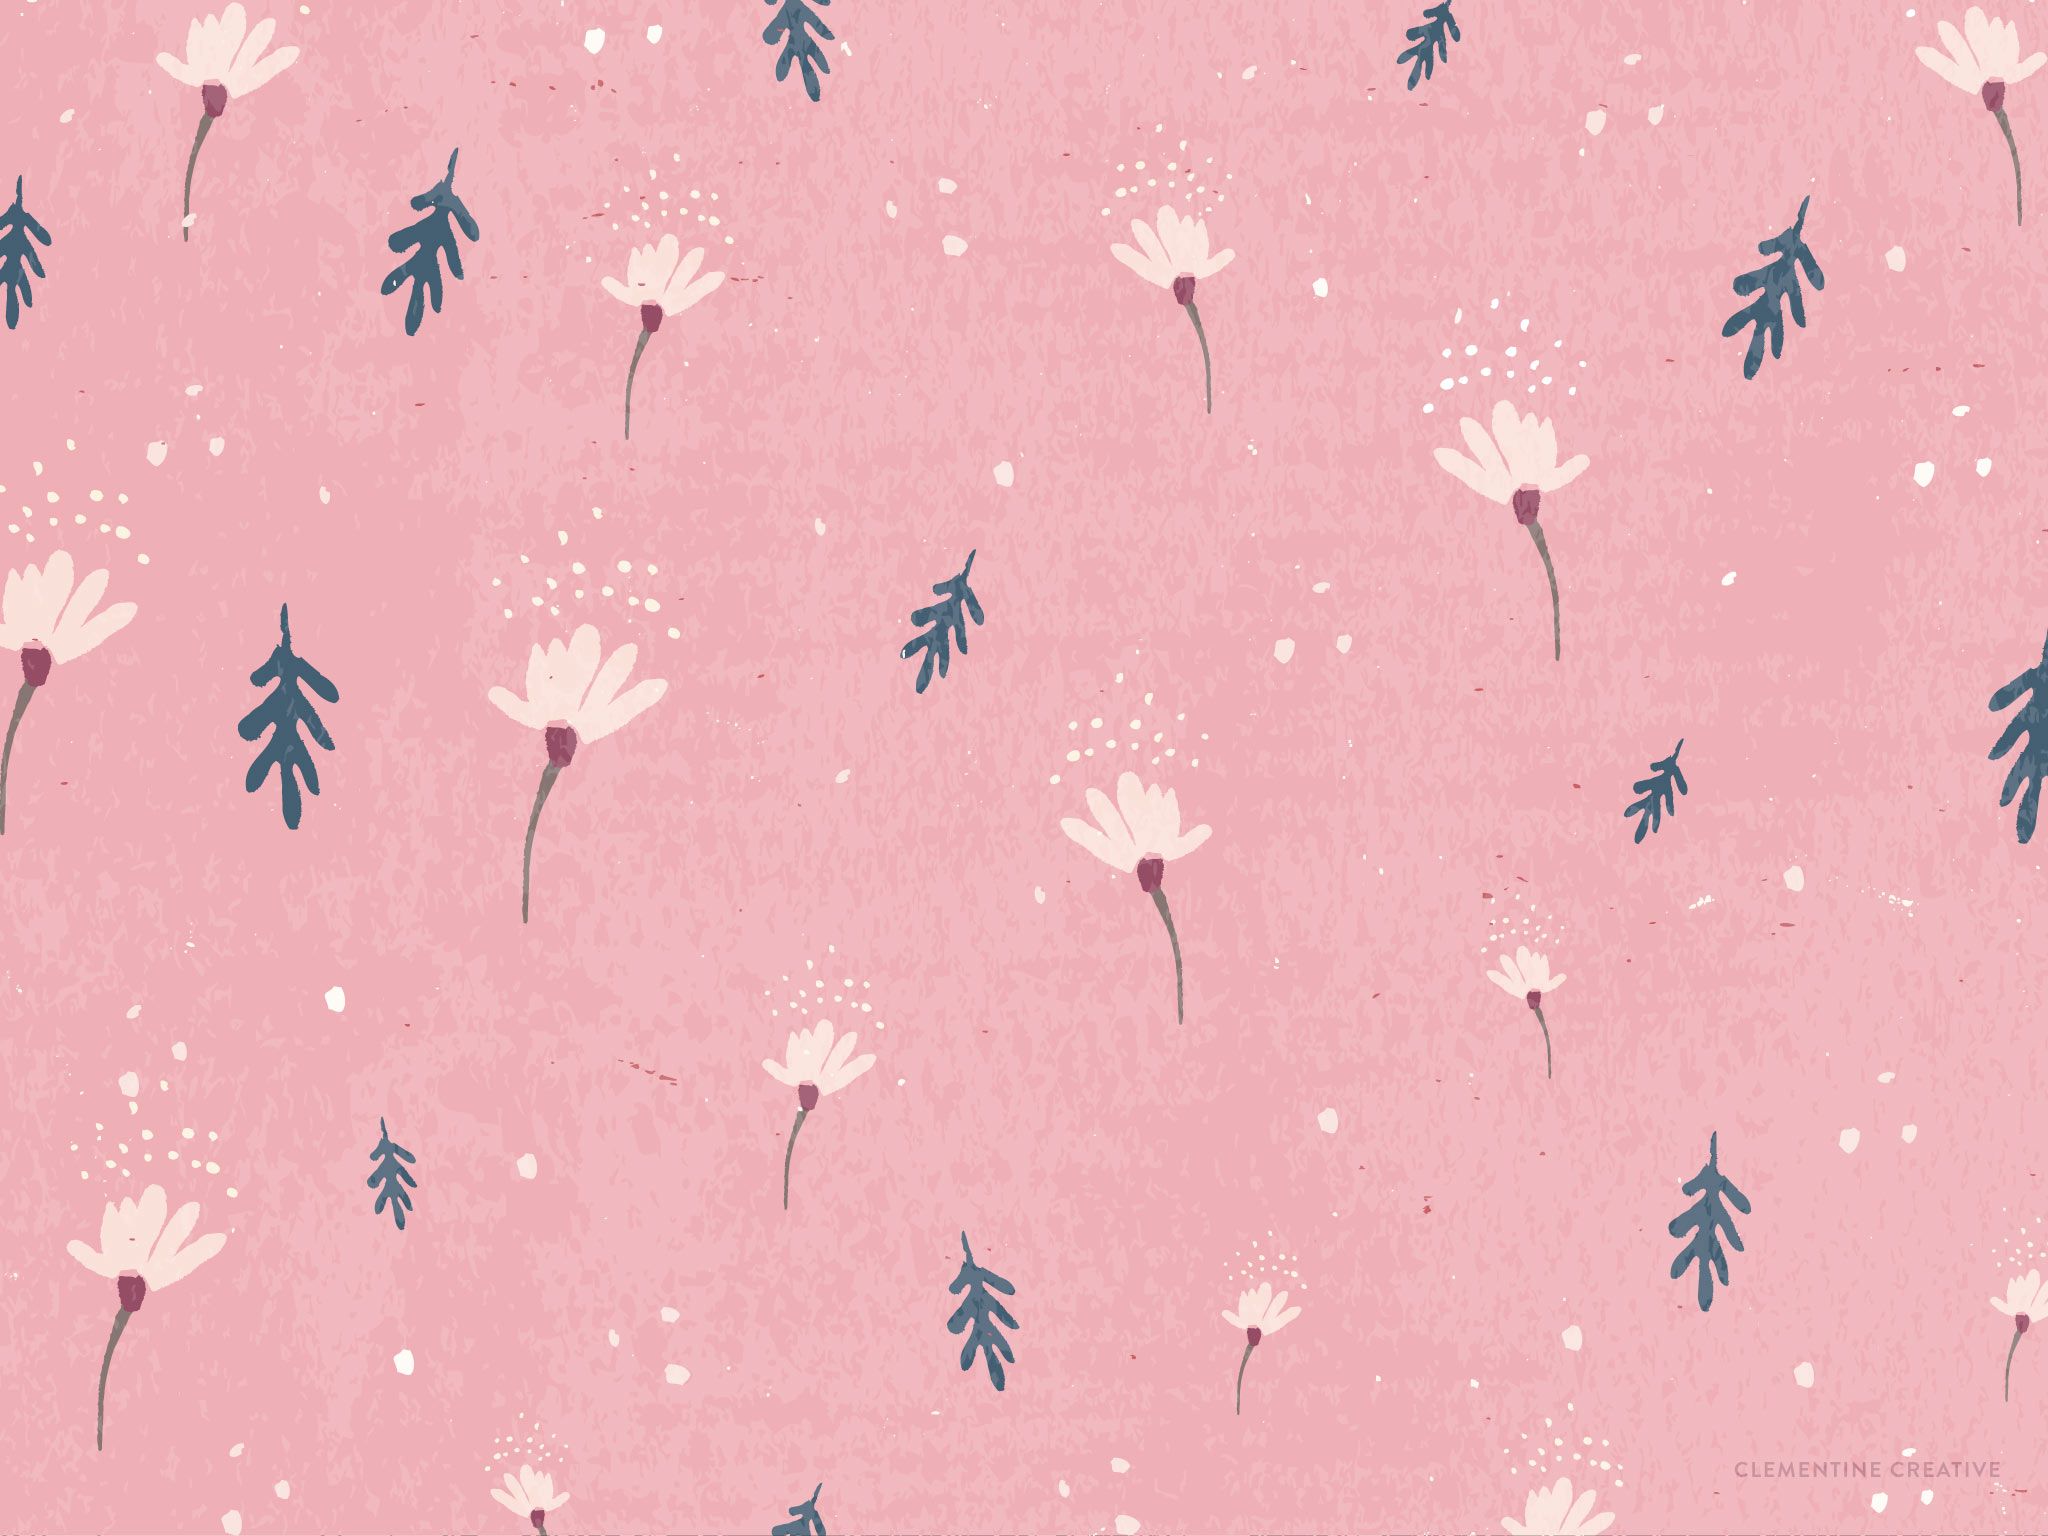 Free Wallpaper: Dainty Falling Flowers. Free wallpaper, Aesthetic desktop wallpaper, Flower wallpaper